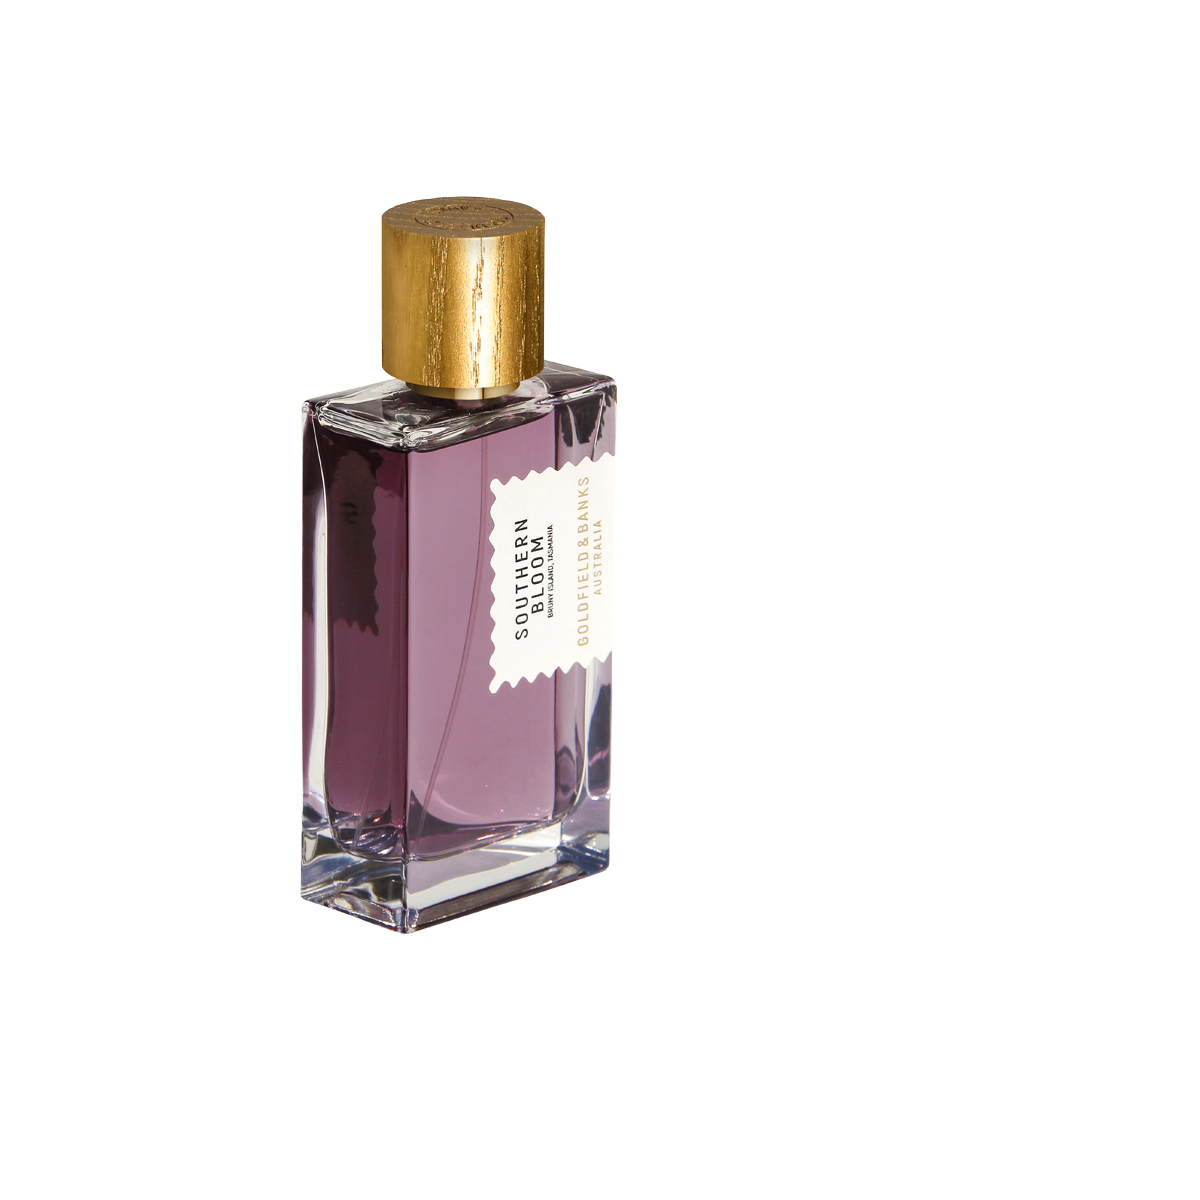 Goldfield & Banks - Southern Bloom Eau de Parfum